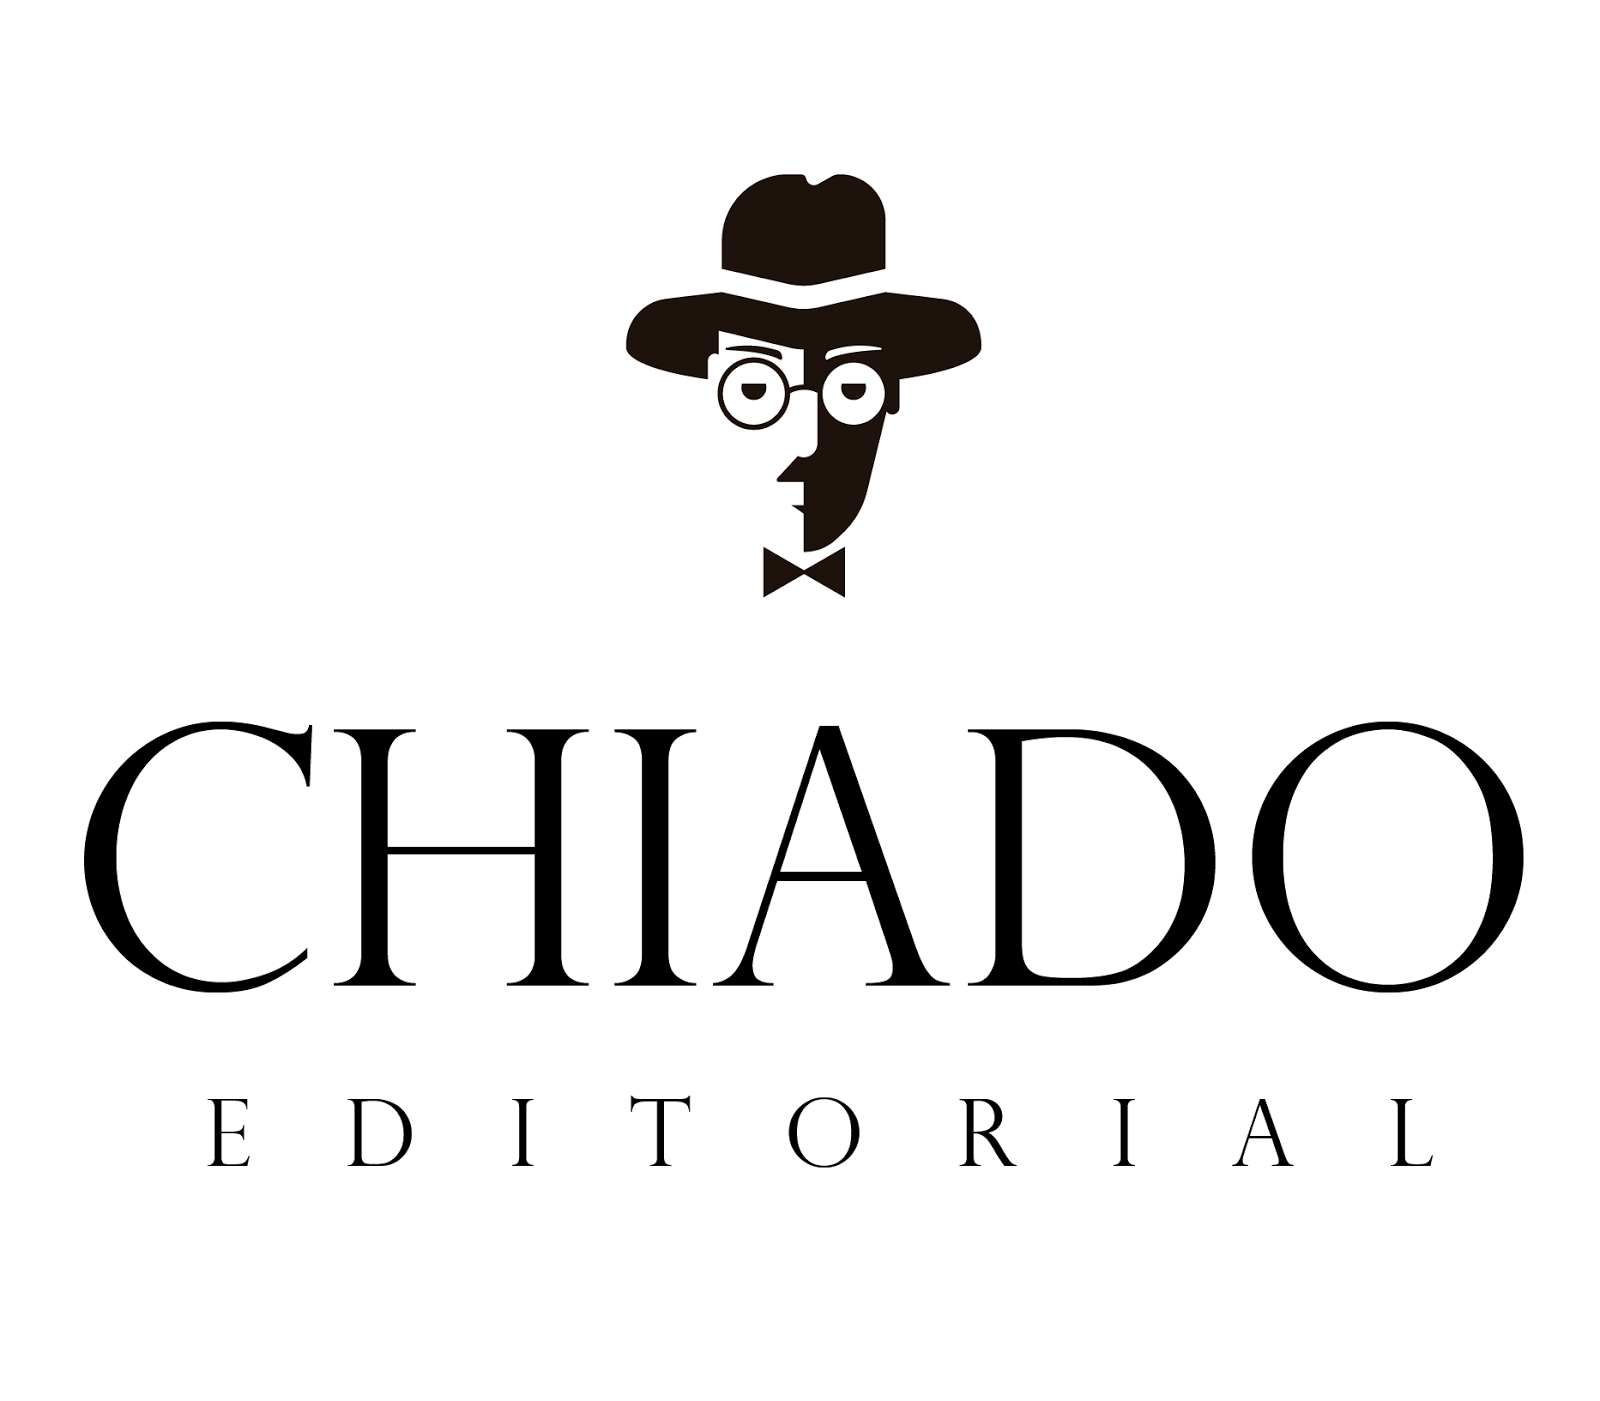 Editorial Chiado